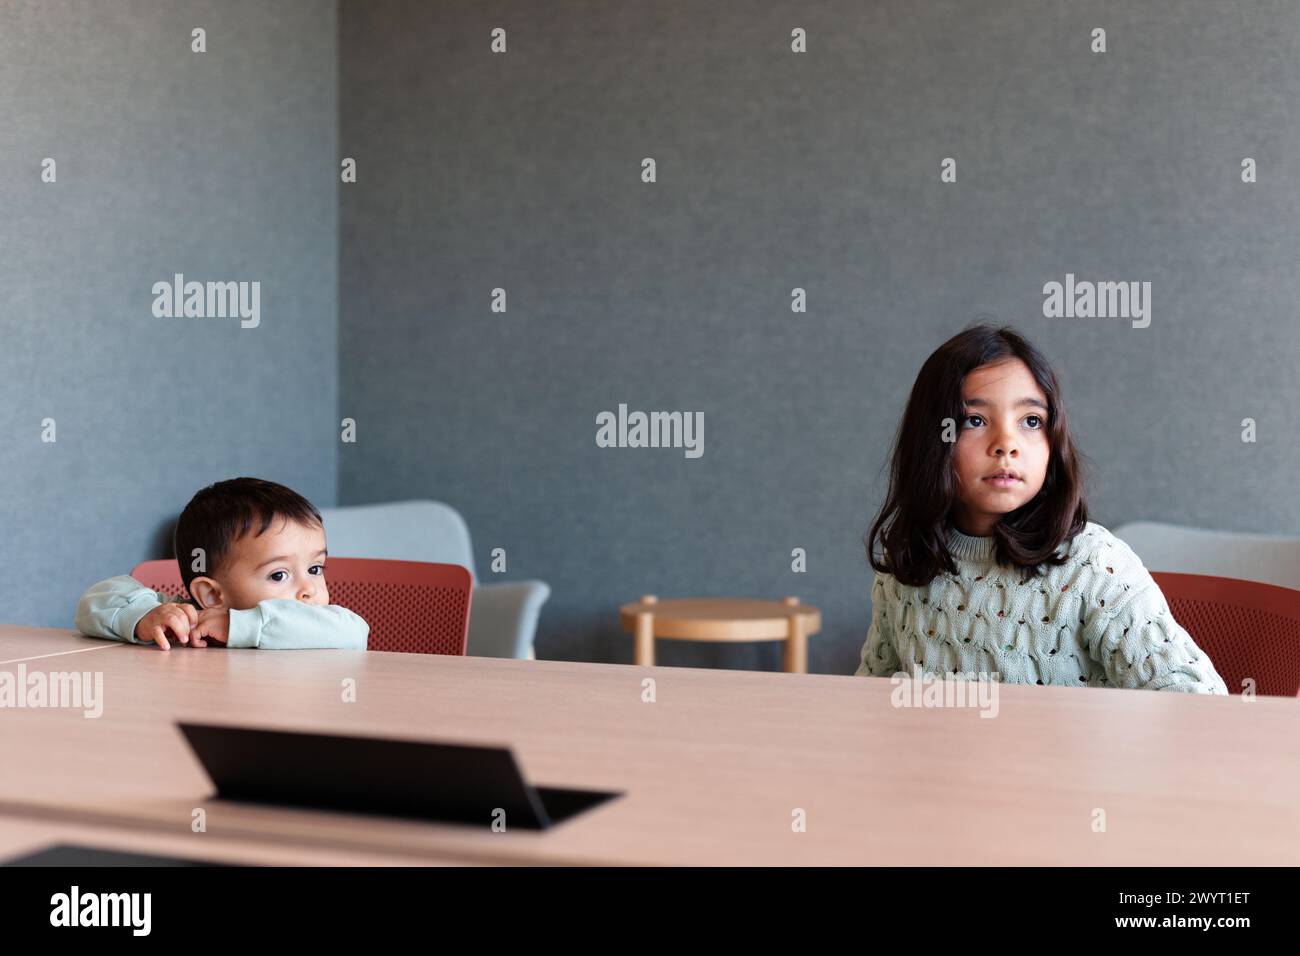 Zwei Kinder, die in einem Büro auf einem Stuhl sitzen Stockfoto